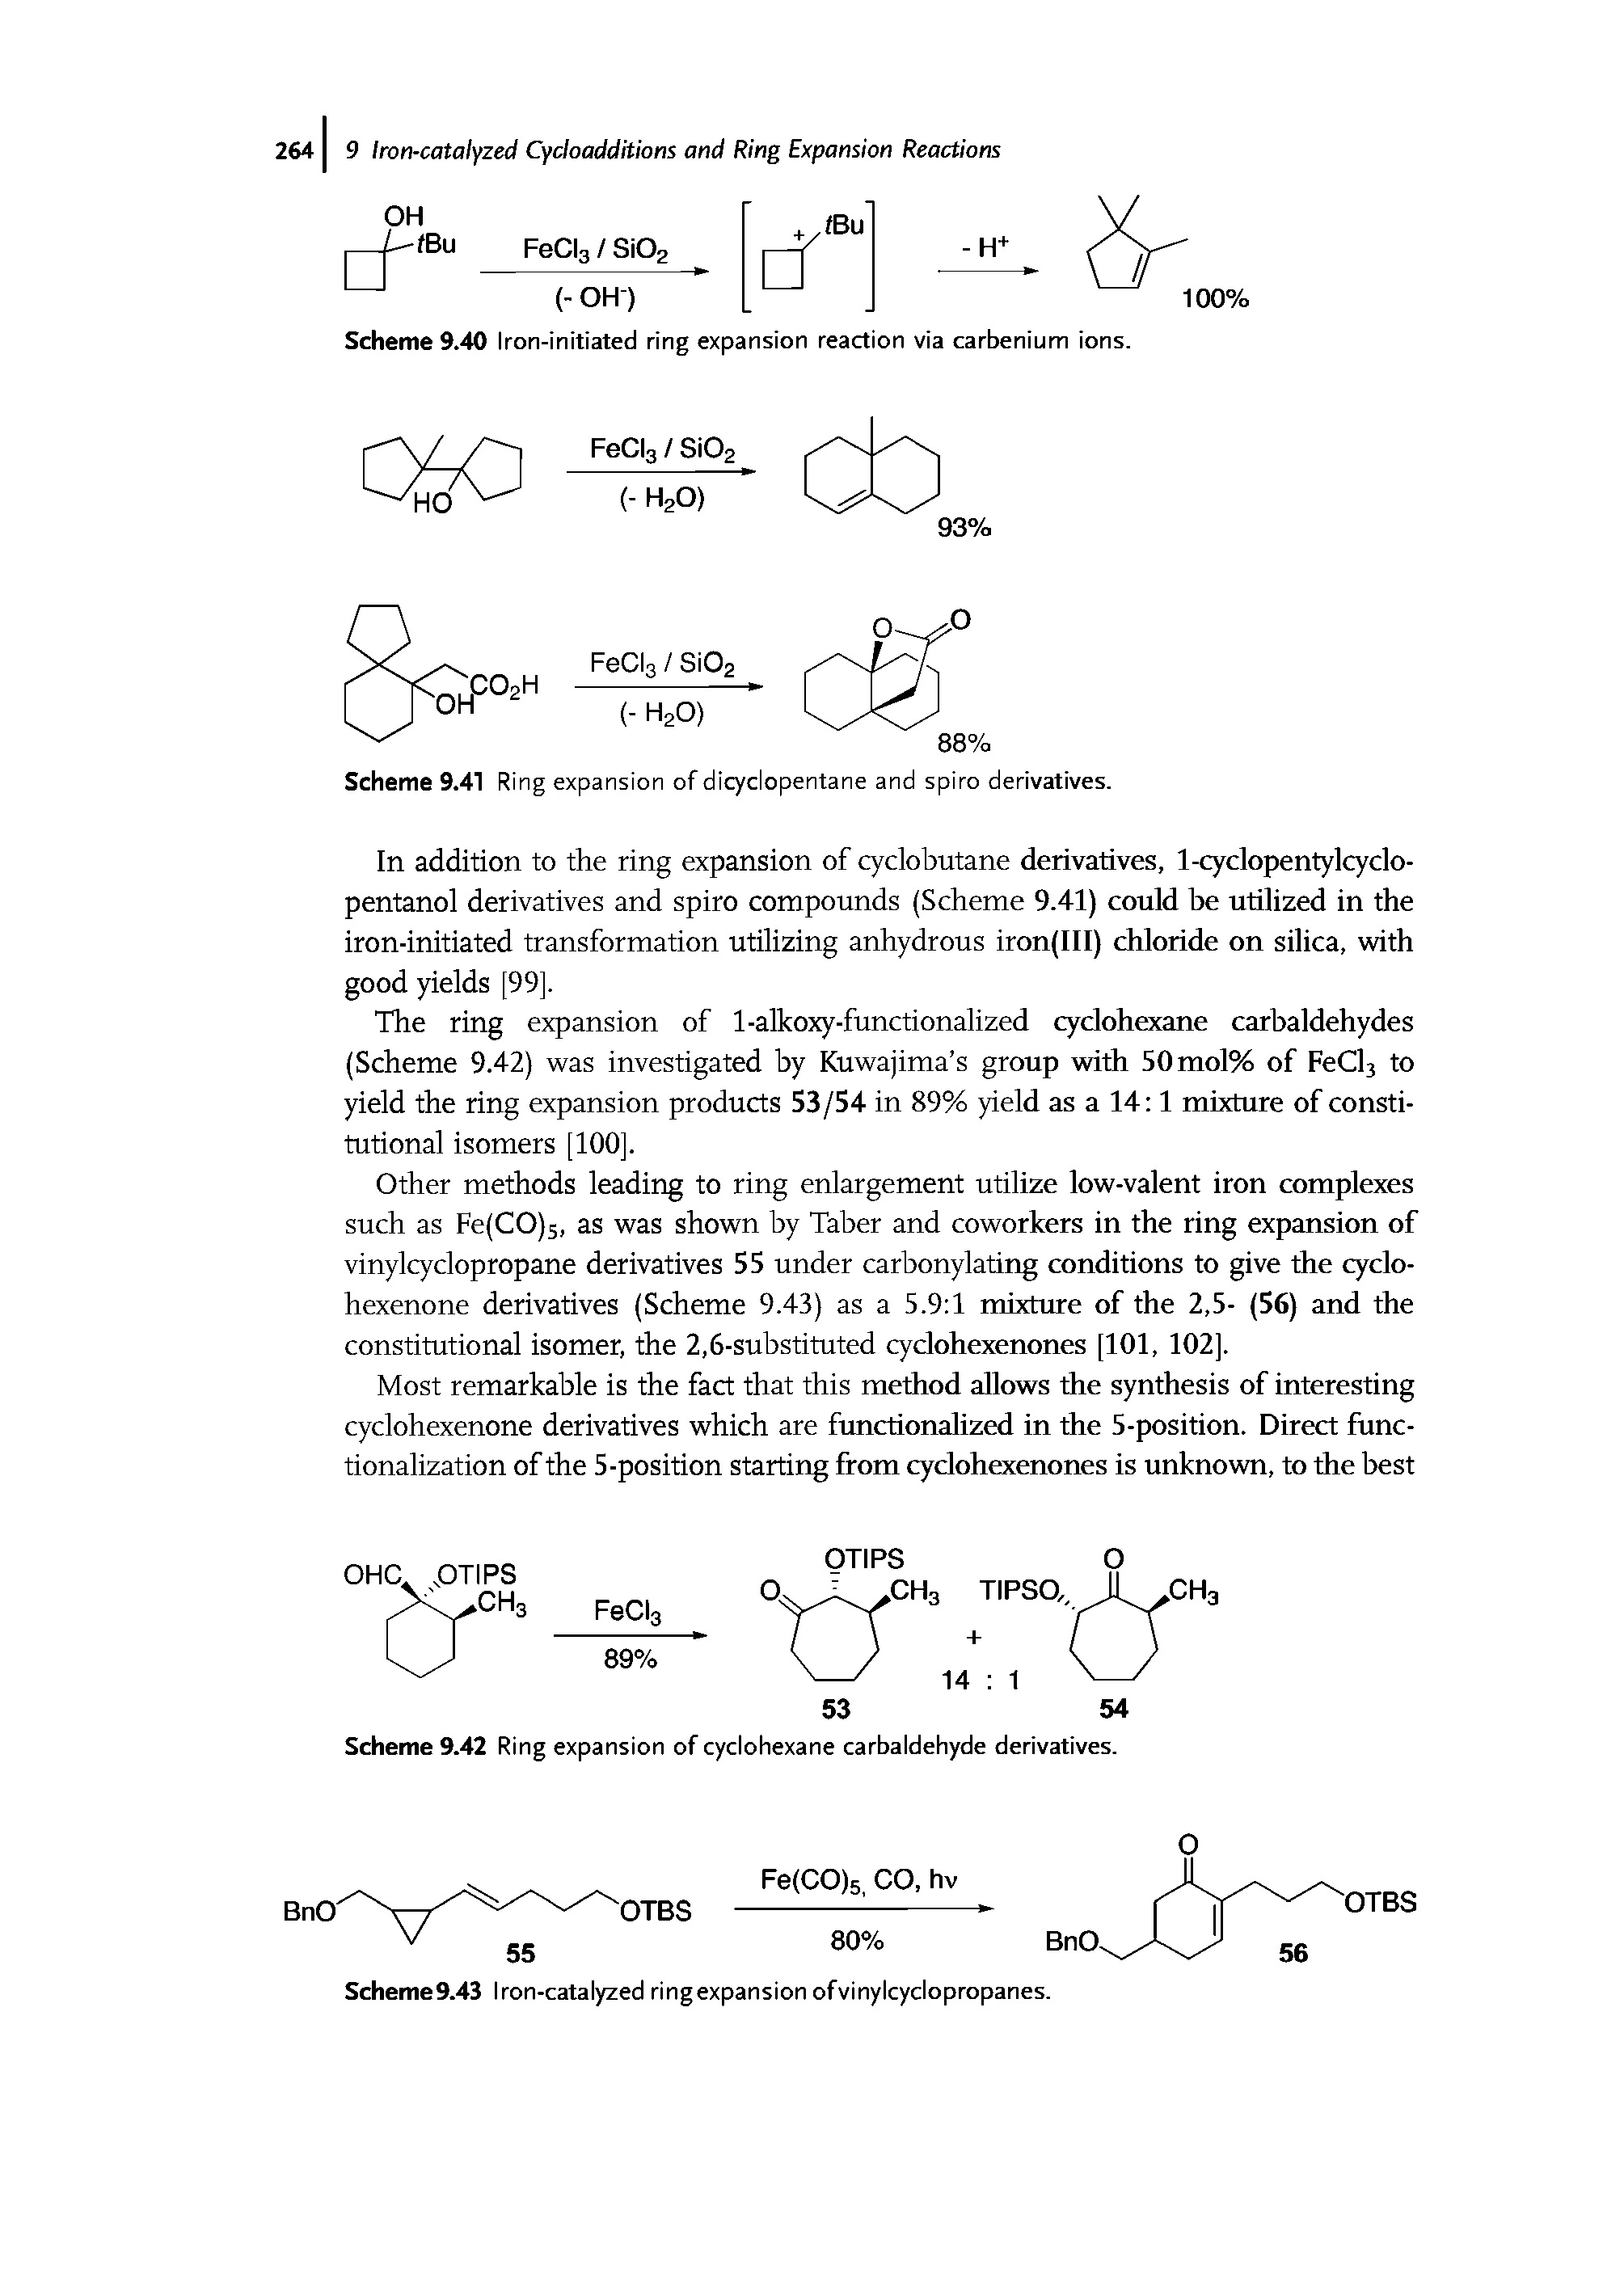 Scheme 9.42 Ring expansion of cyclohexane carbaldehyde derivatives.